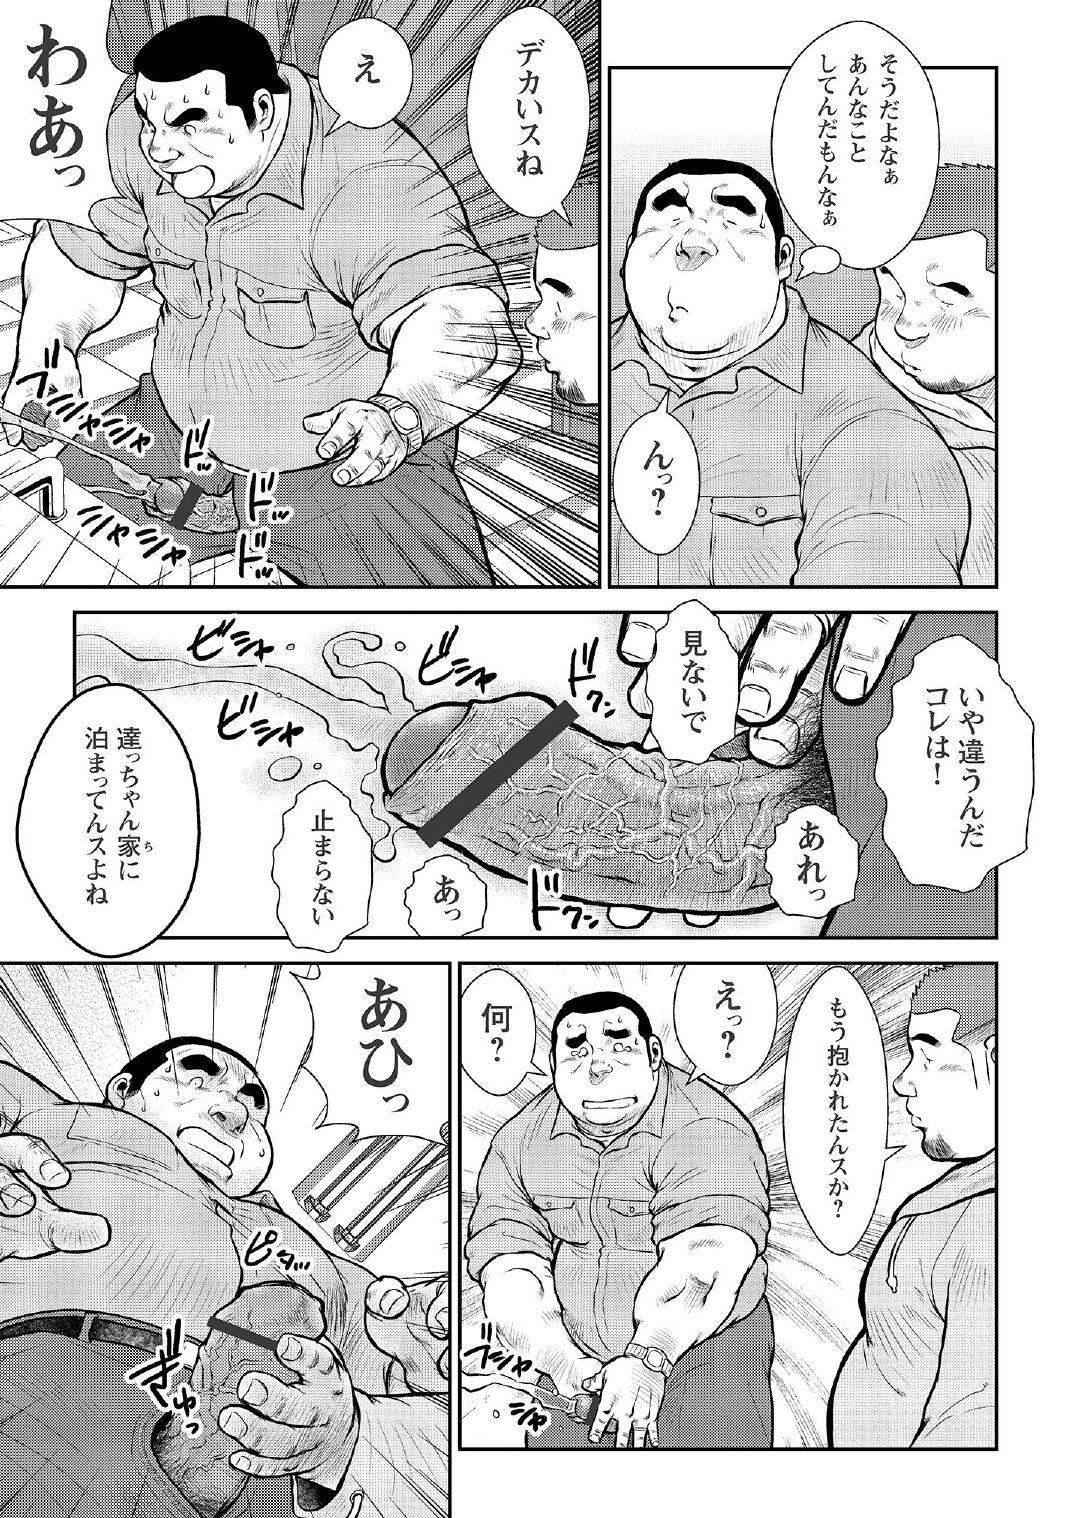 [Ebisubashi Seizou] Ebisubashi Seizou Tanpen Manga Shuu 2 Fuuun! Danshi Ryou [Bunsatsuban] PART 2 Bousou Hantou Taifuu Zensen Ch. 1 + Ch. 2 [Digital] 30